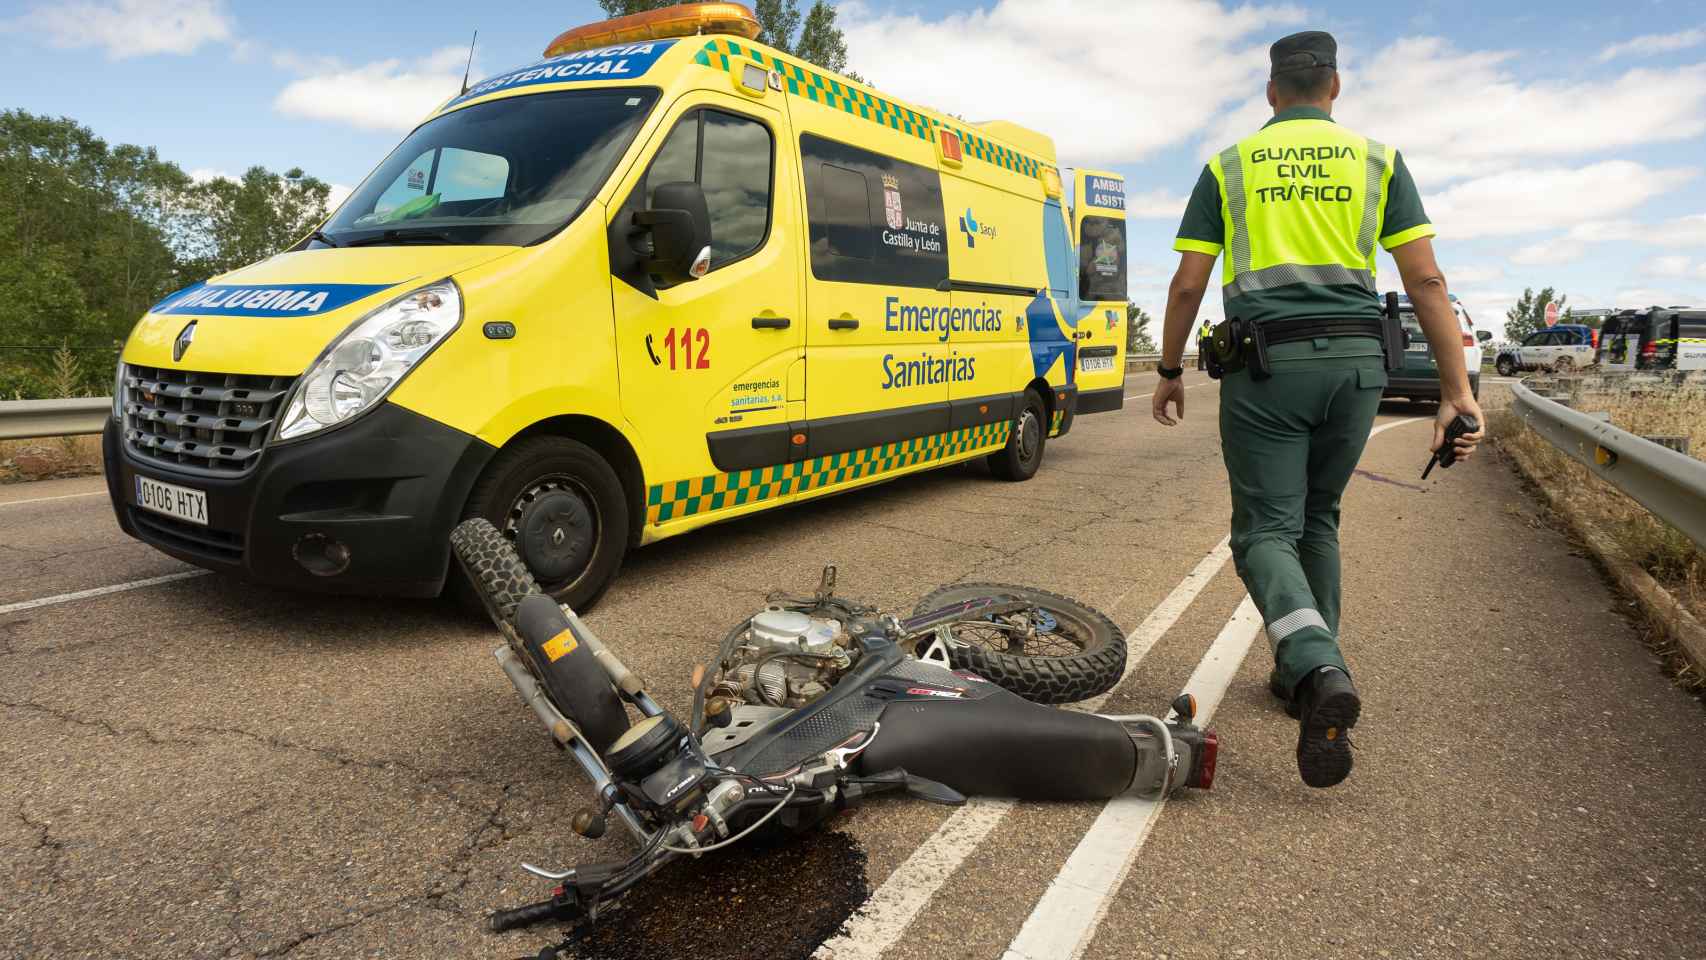 Imagen de la moto tras el accidente en Ciudad Rodrigo.